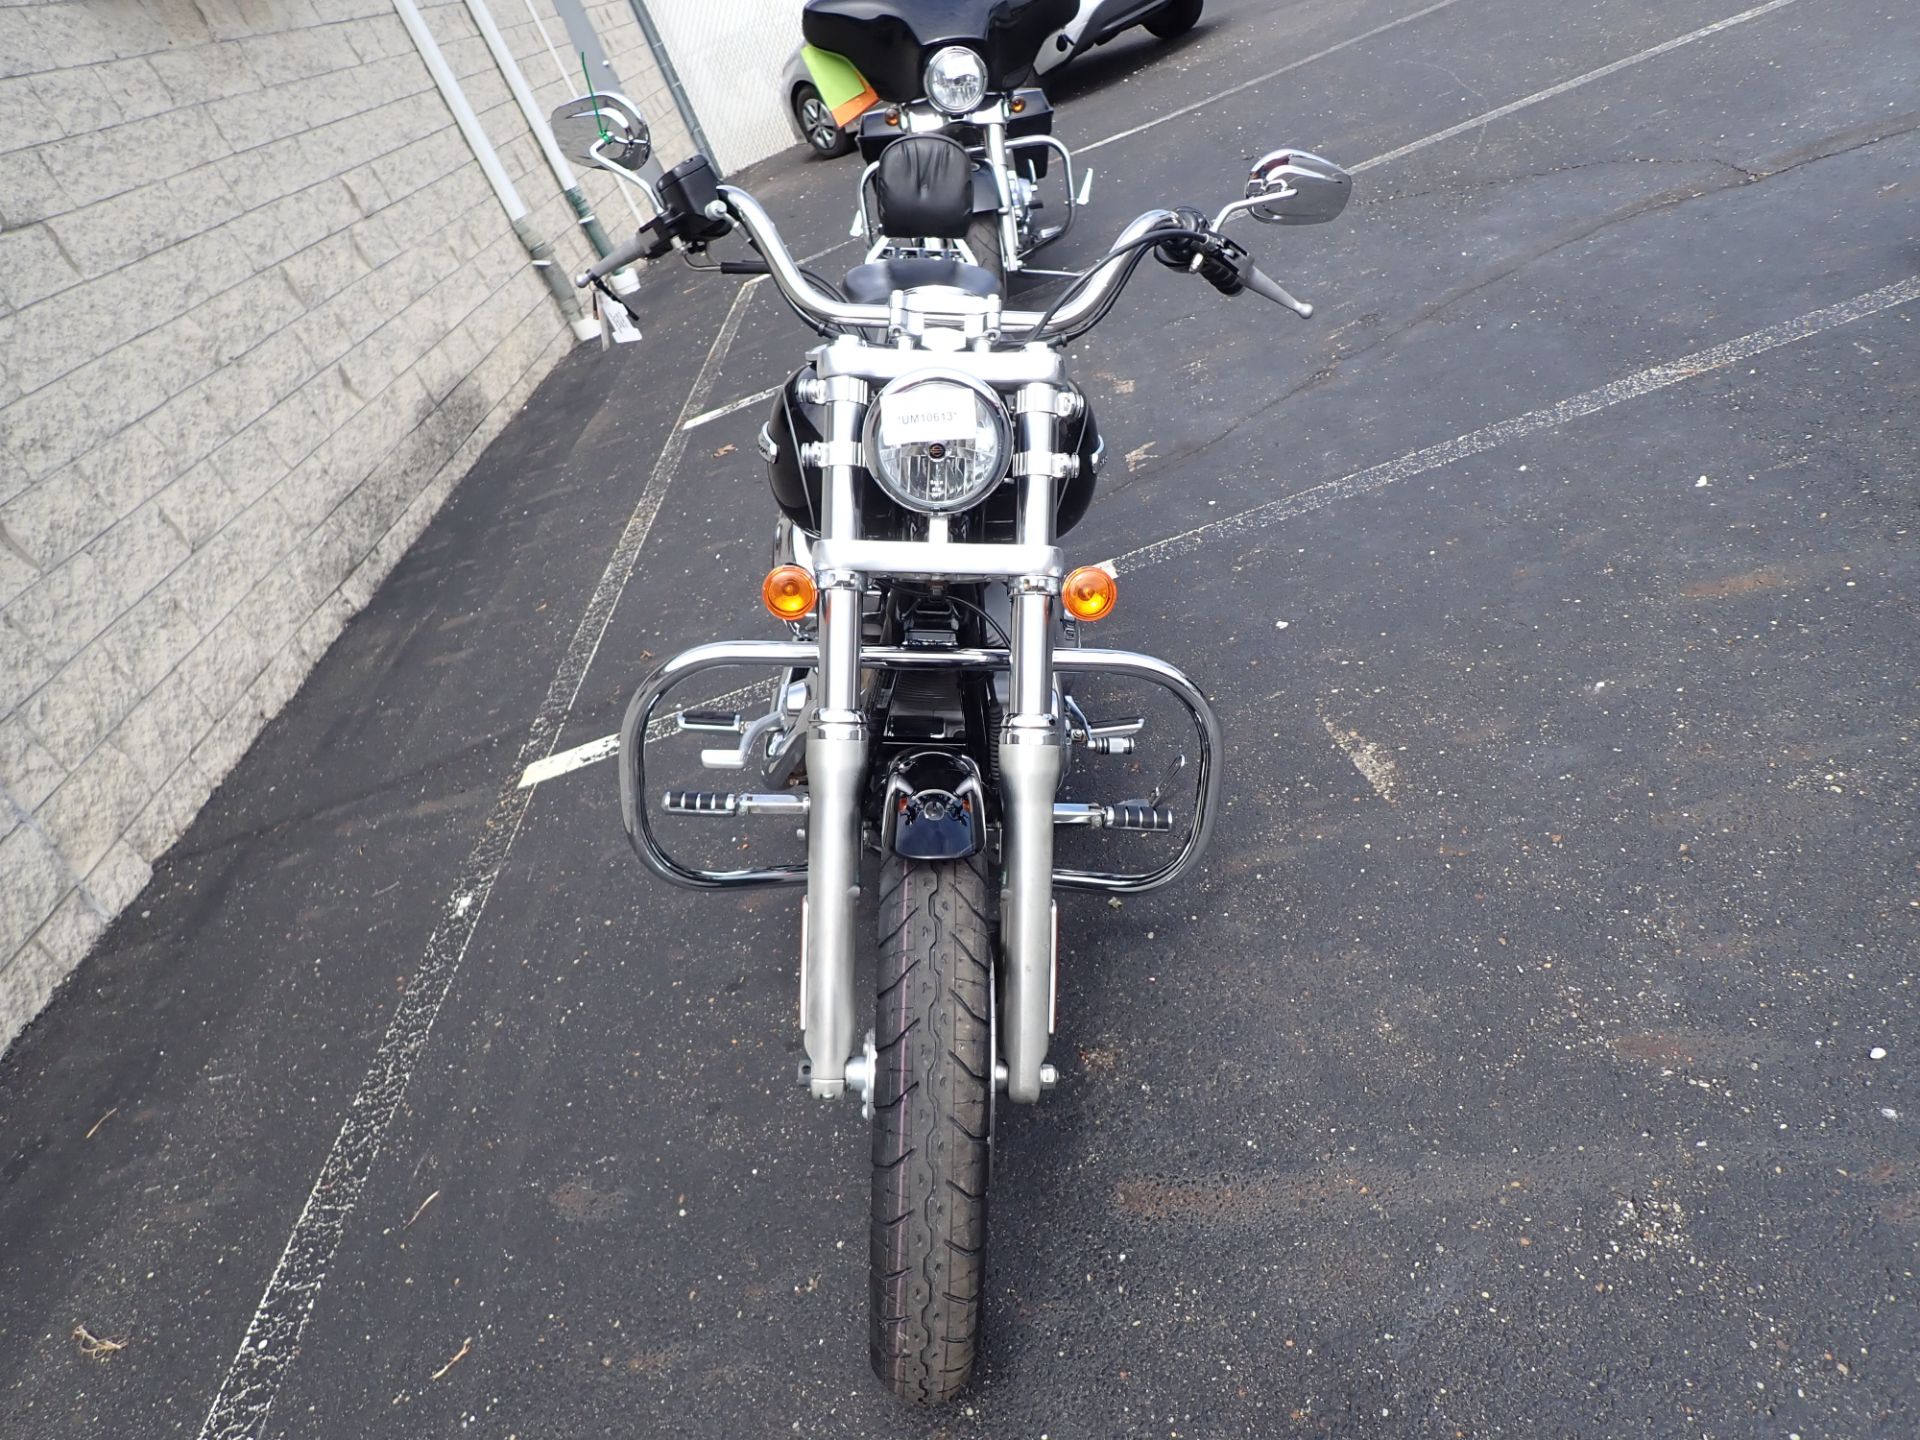 2008 Harley-Davidson Dyna® Super Glide® Custom in Massillon, Ohio - Photo 11